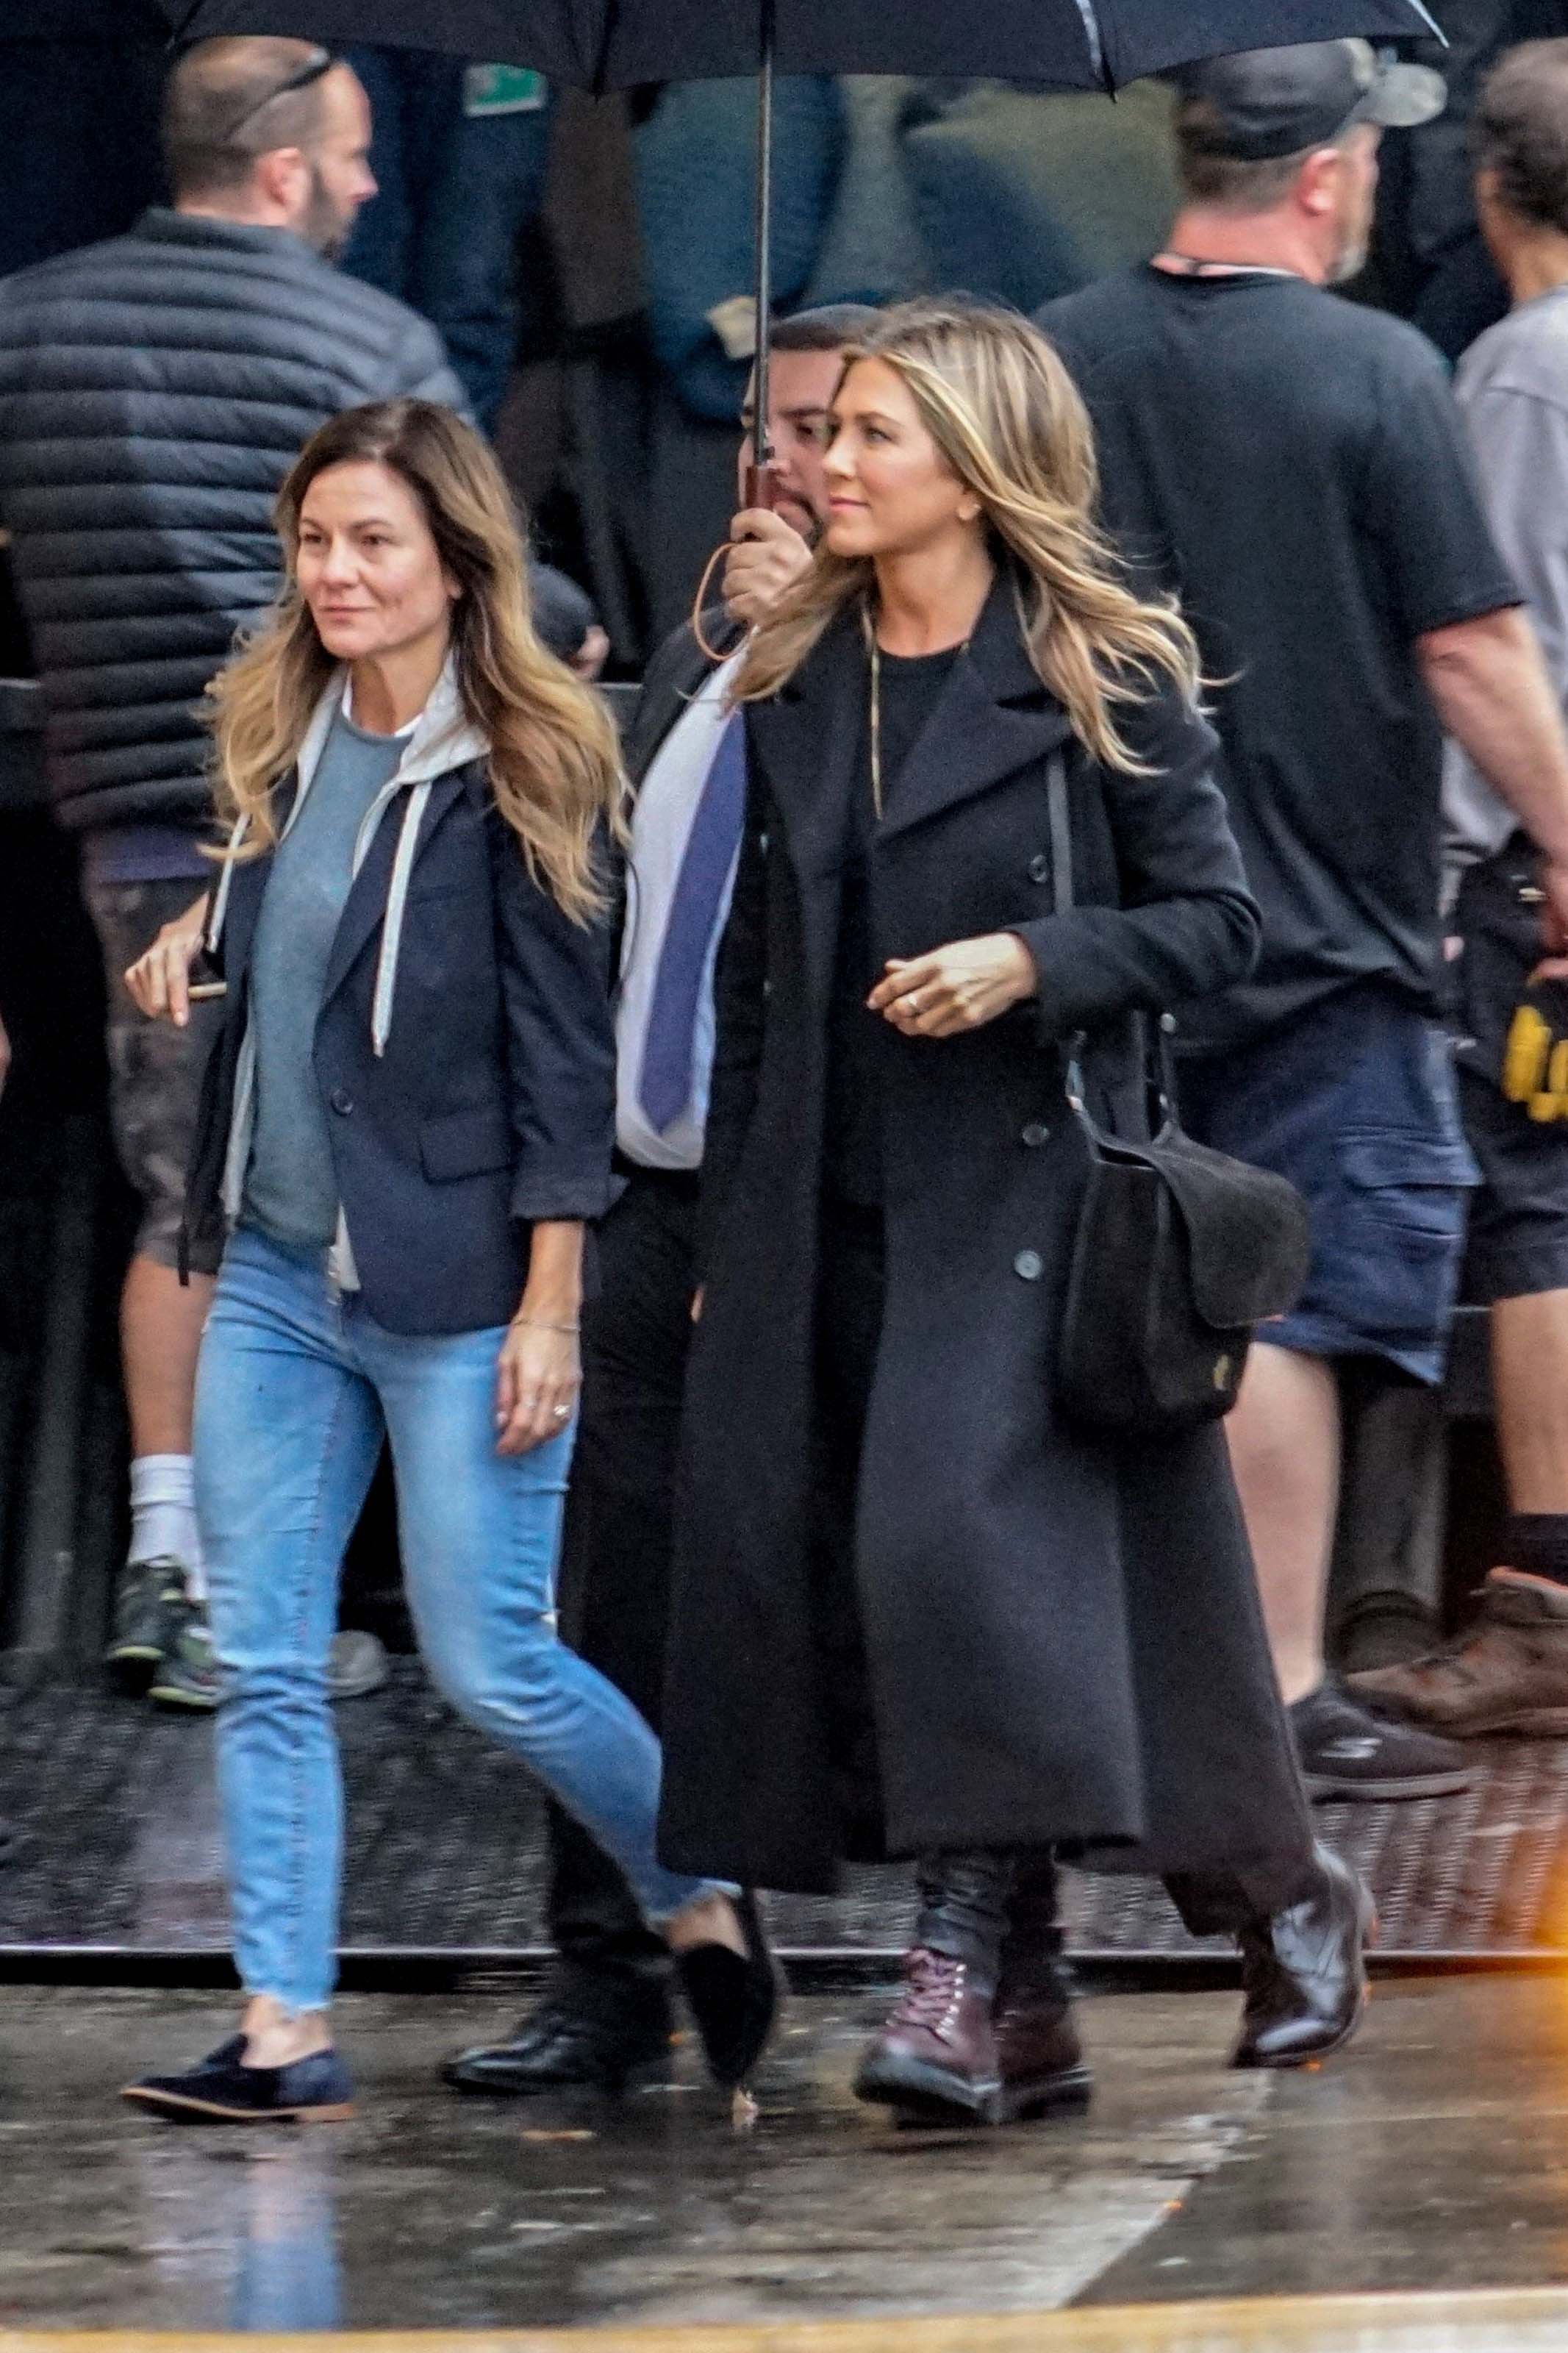 Jennifer Aniston outside Jimmy Kimmel Live